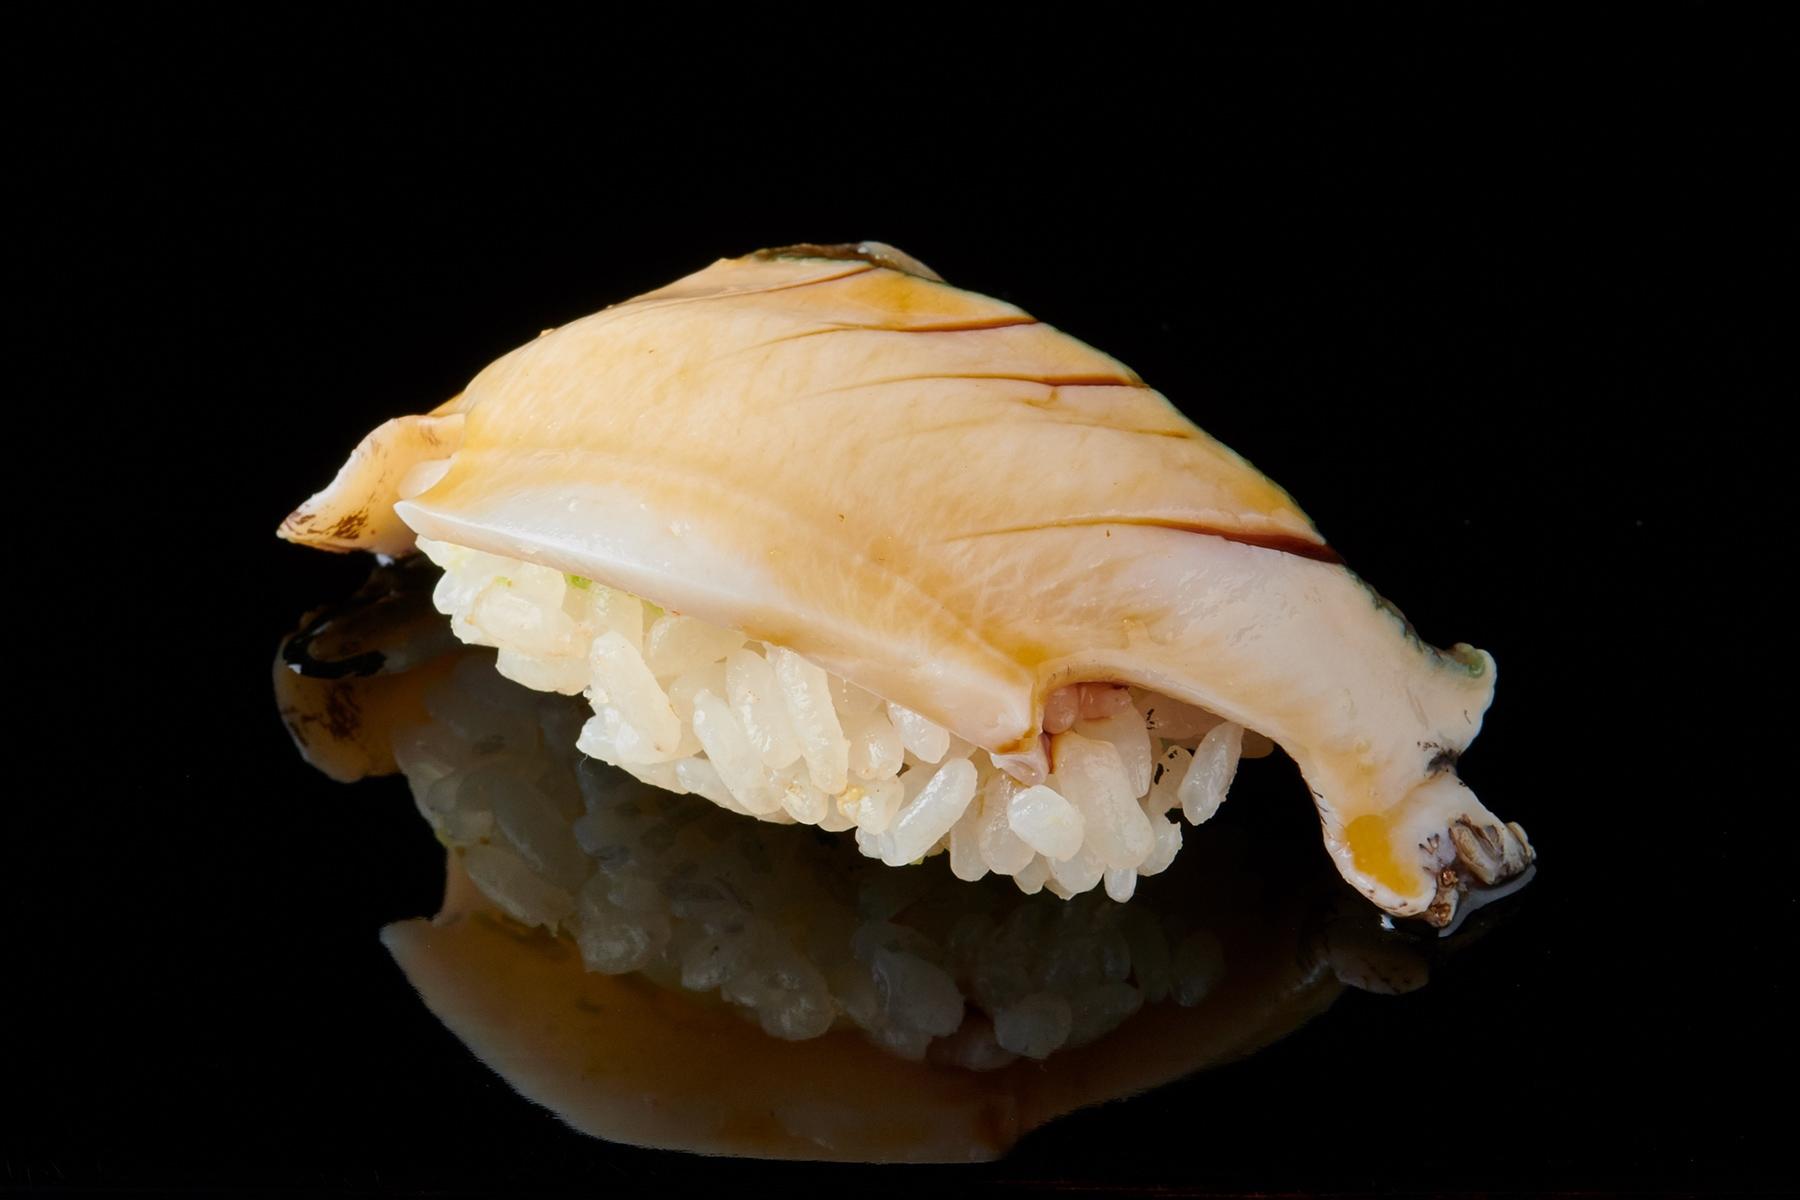 㐂寿司 のマダカは幻の鮑 㐂寿司 の365日 公式 Dancyu ダンチュウ